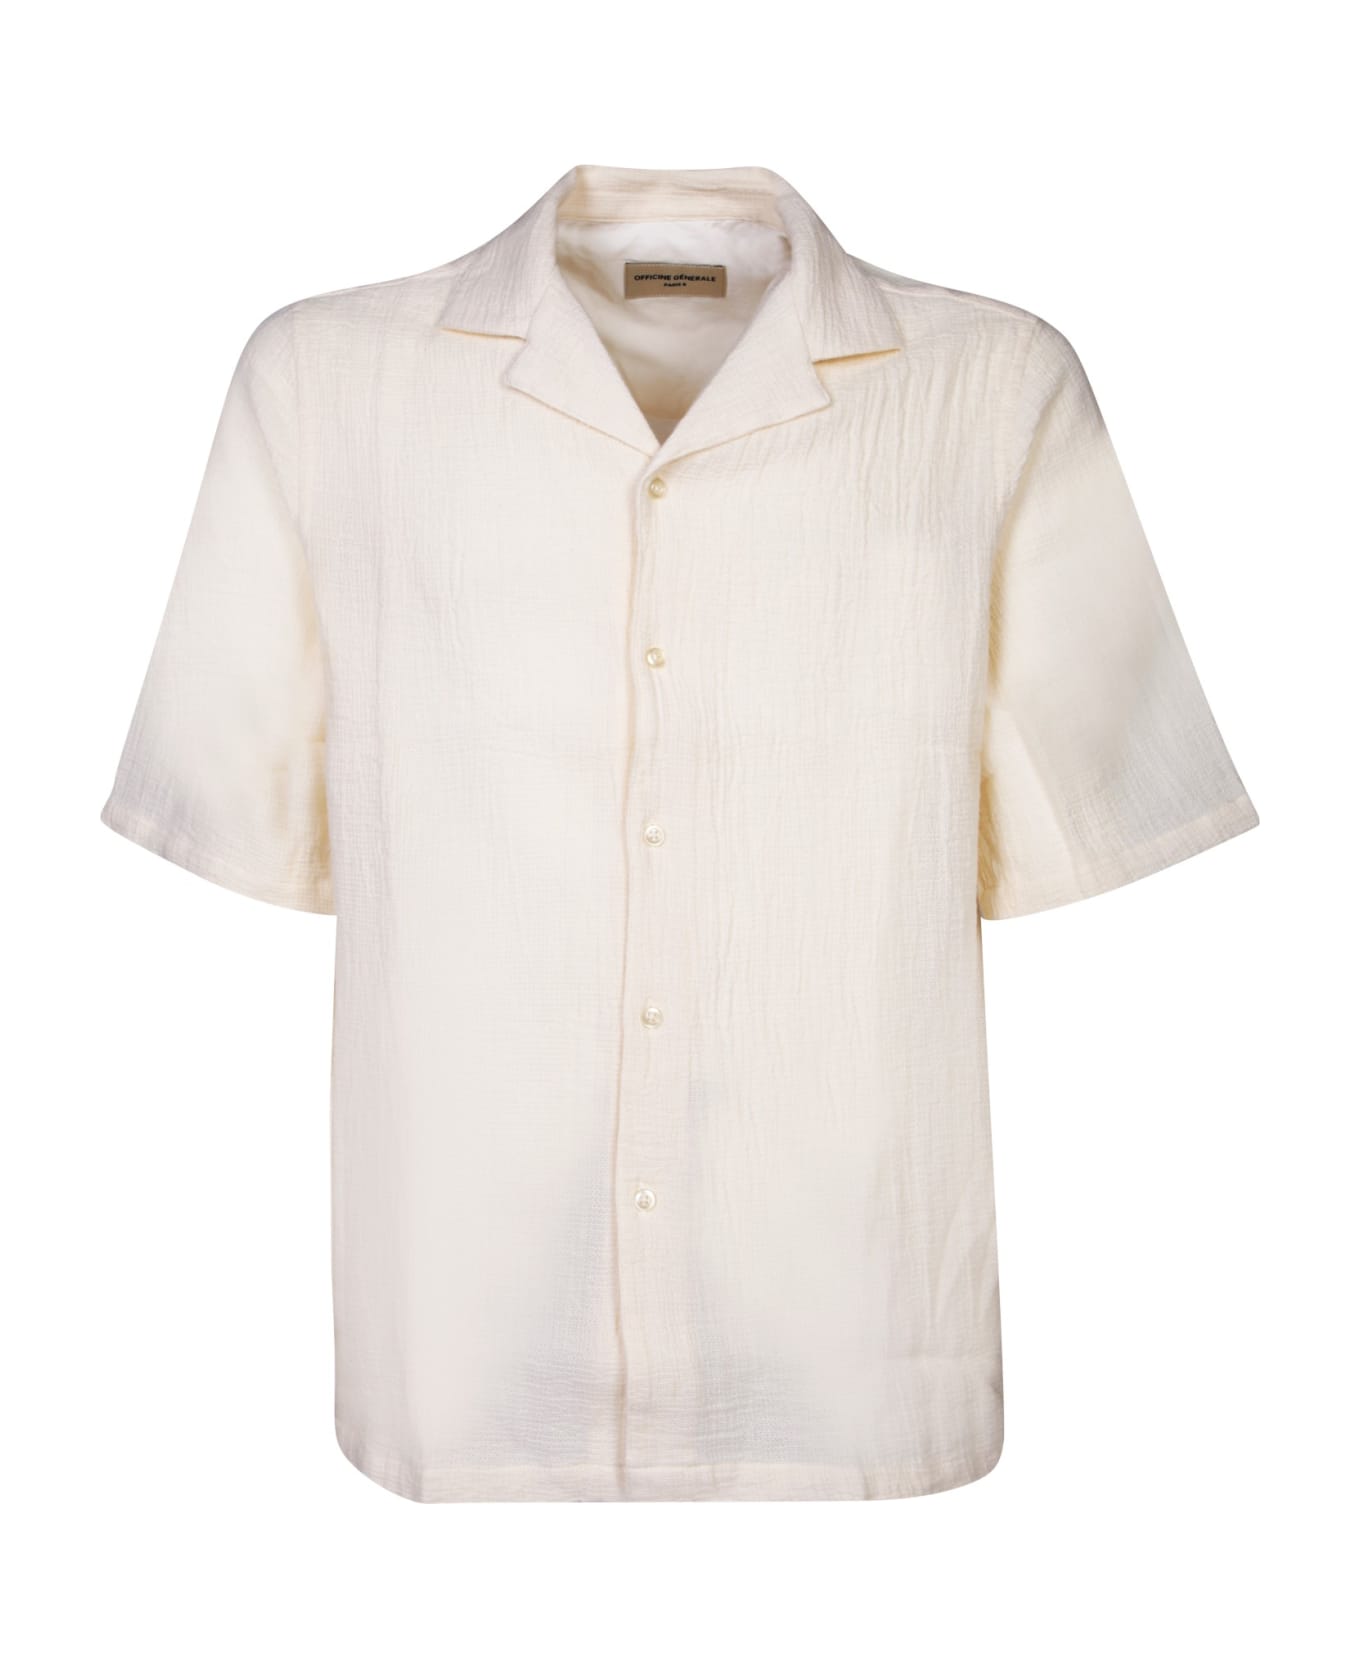 Officine Générale Short Sleeves White Shirt - White シャツ